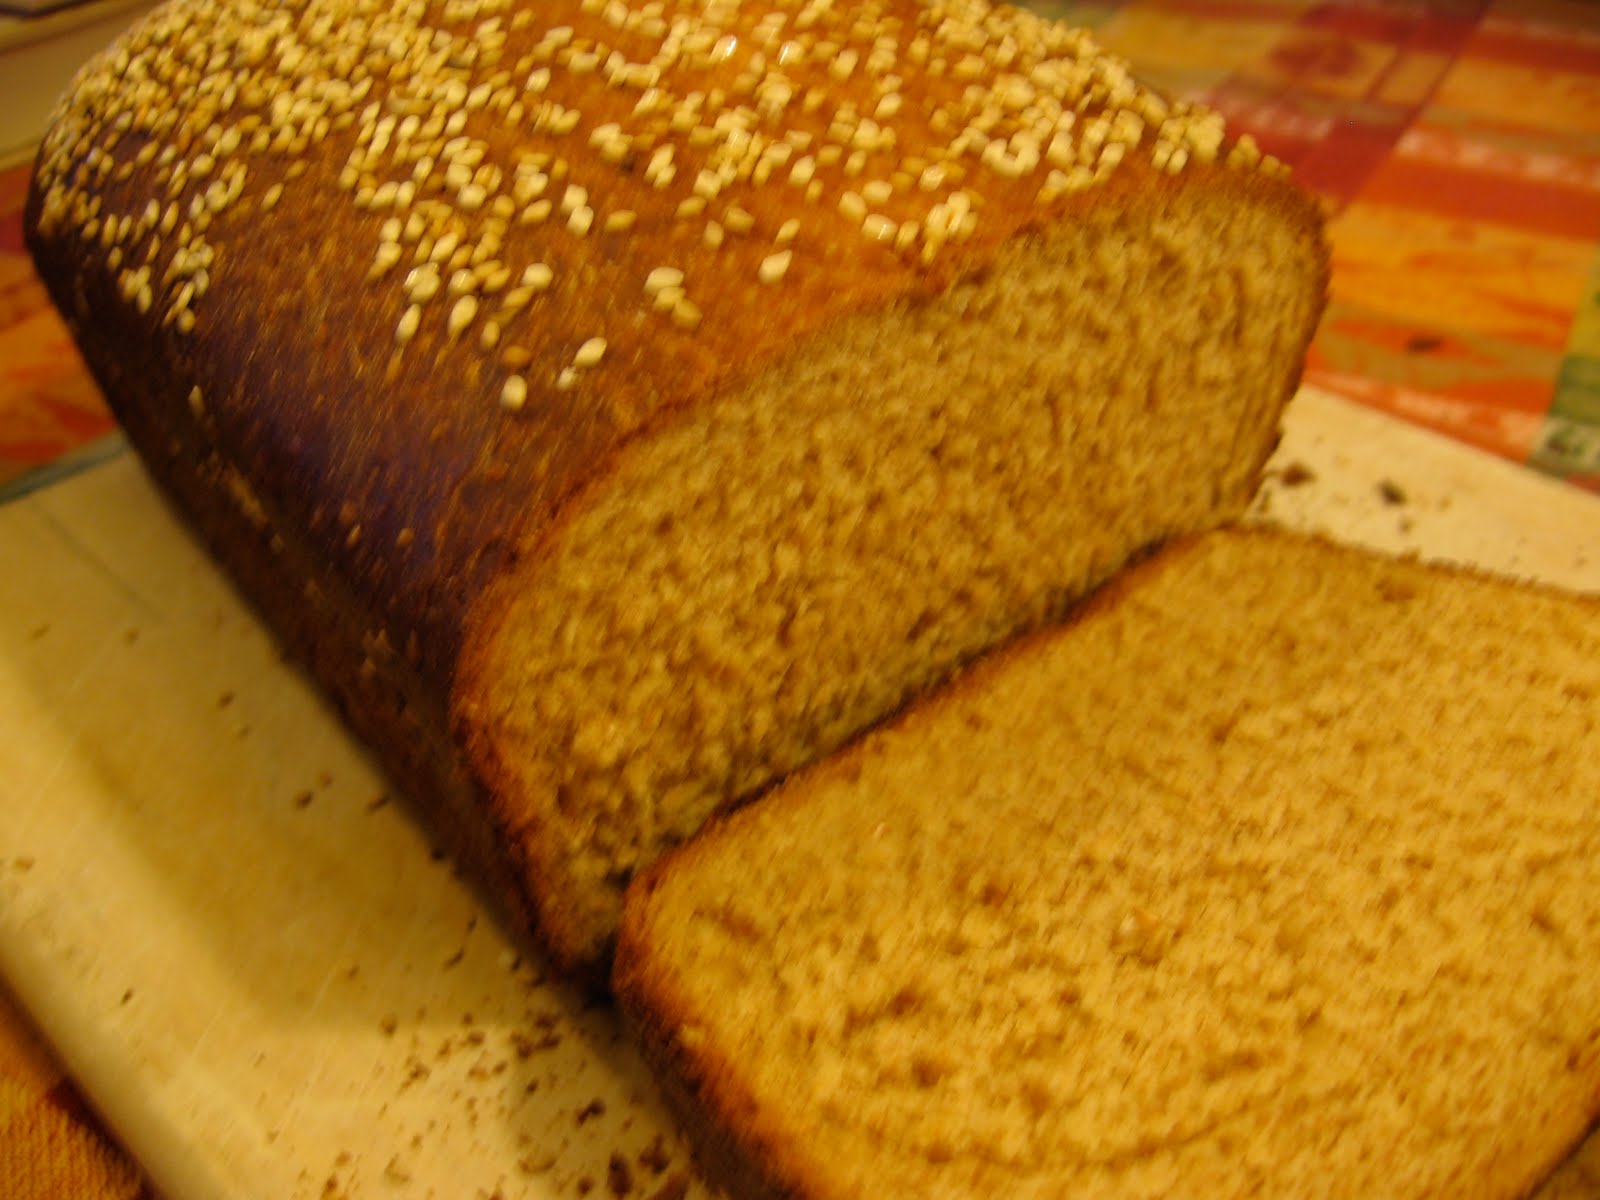 Rustic Wheat Bread